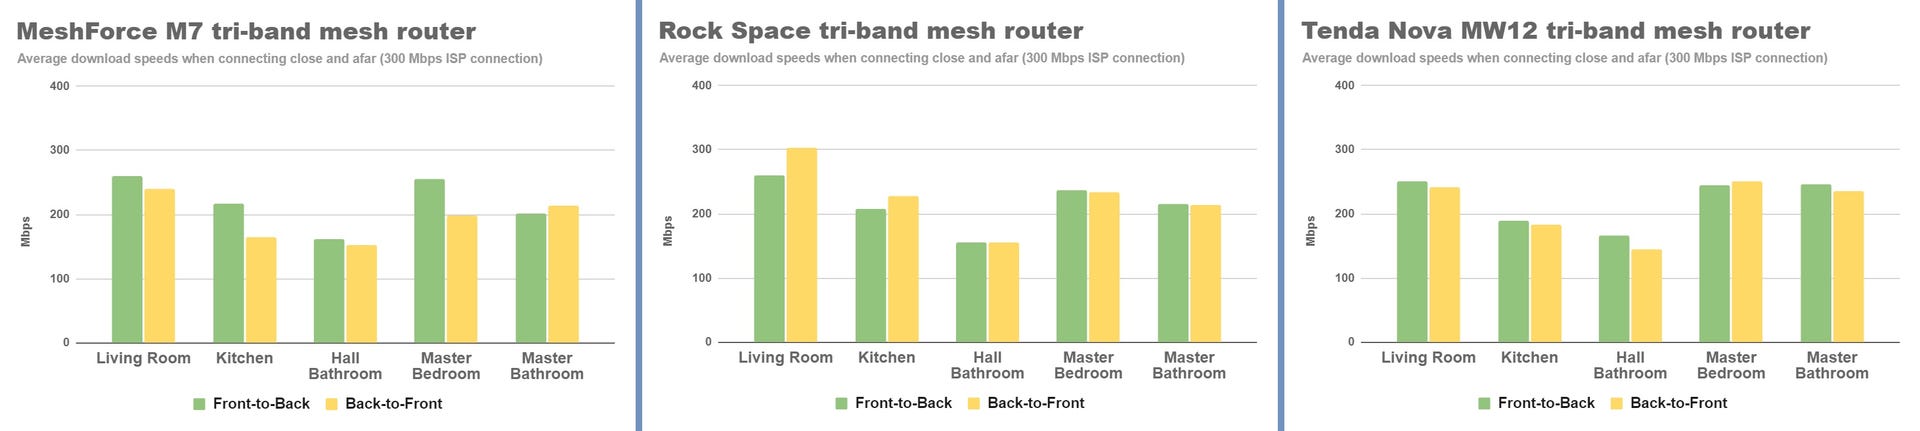 meshforce-rock-space-tenda-nova-front-and-back